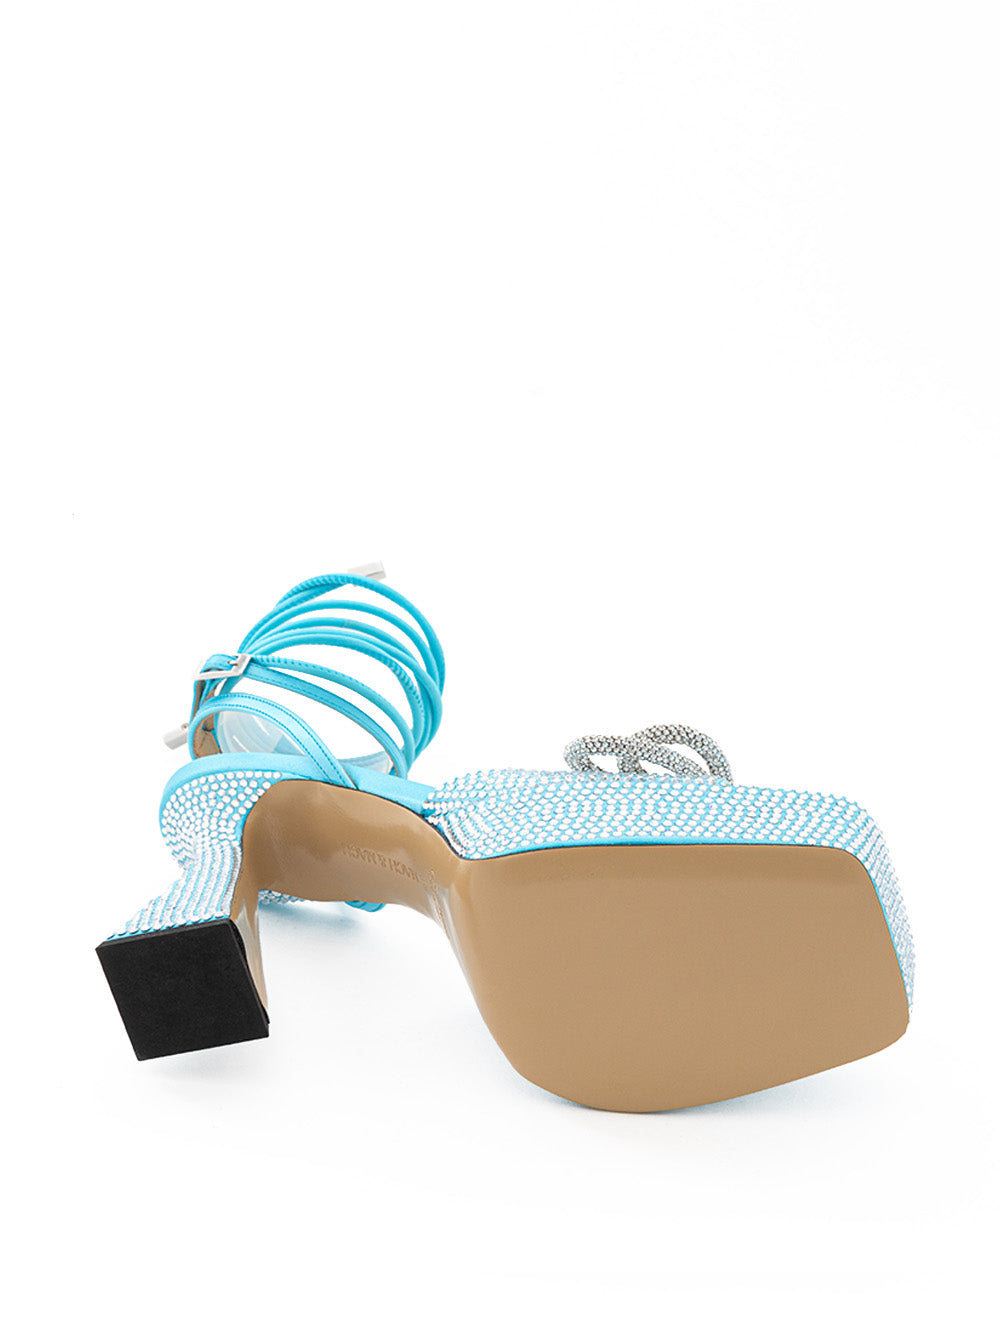 MACH & MACH Light Blue Plateau Sandals with Double Bow - DEA STILOSA MILANO